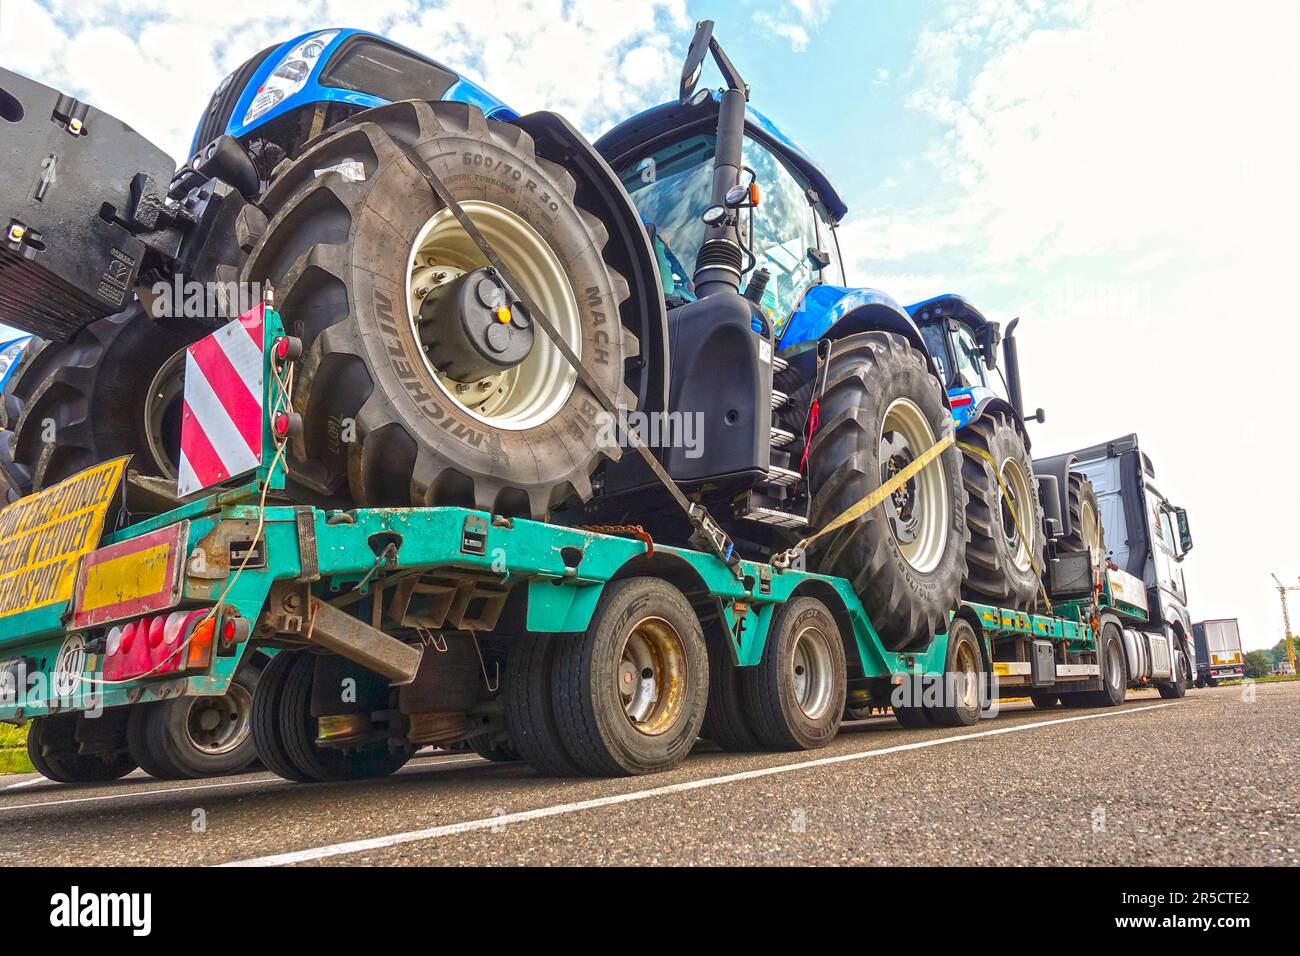 AACHEN, NRW - 12. Juli 2019: Schwertransport großer Traktoren auf einem speziellen Tieflader-Anhänger-LKW, Parkplatzsicht auf einer Autobahn. Stockfoto